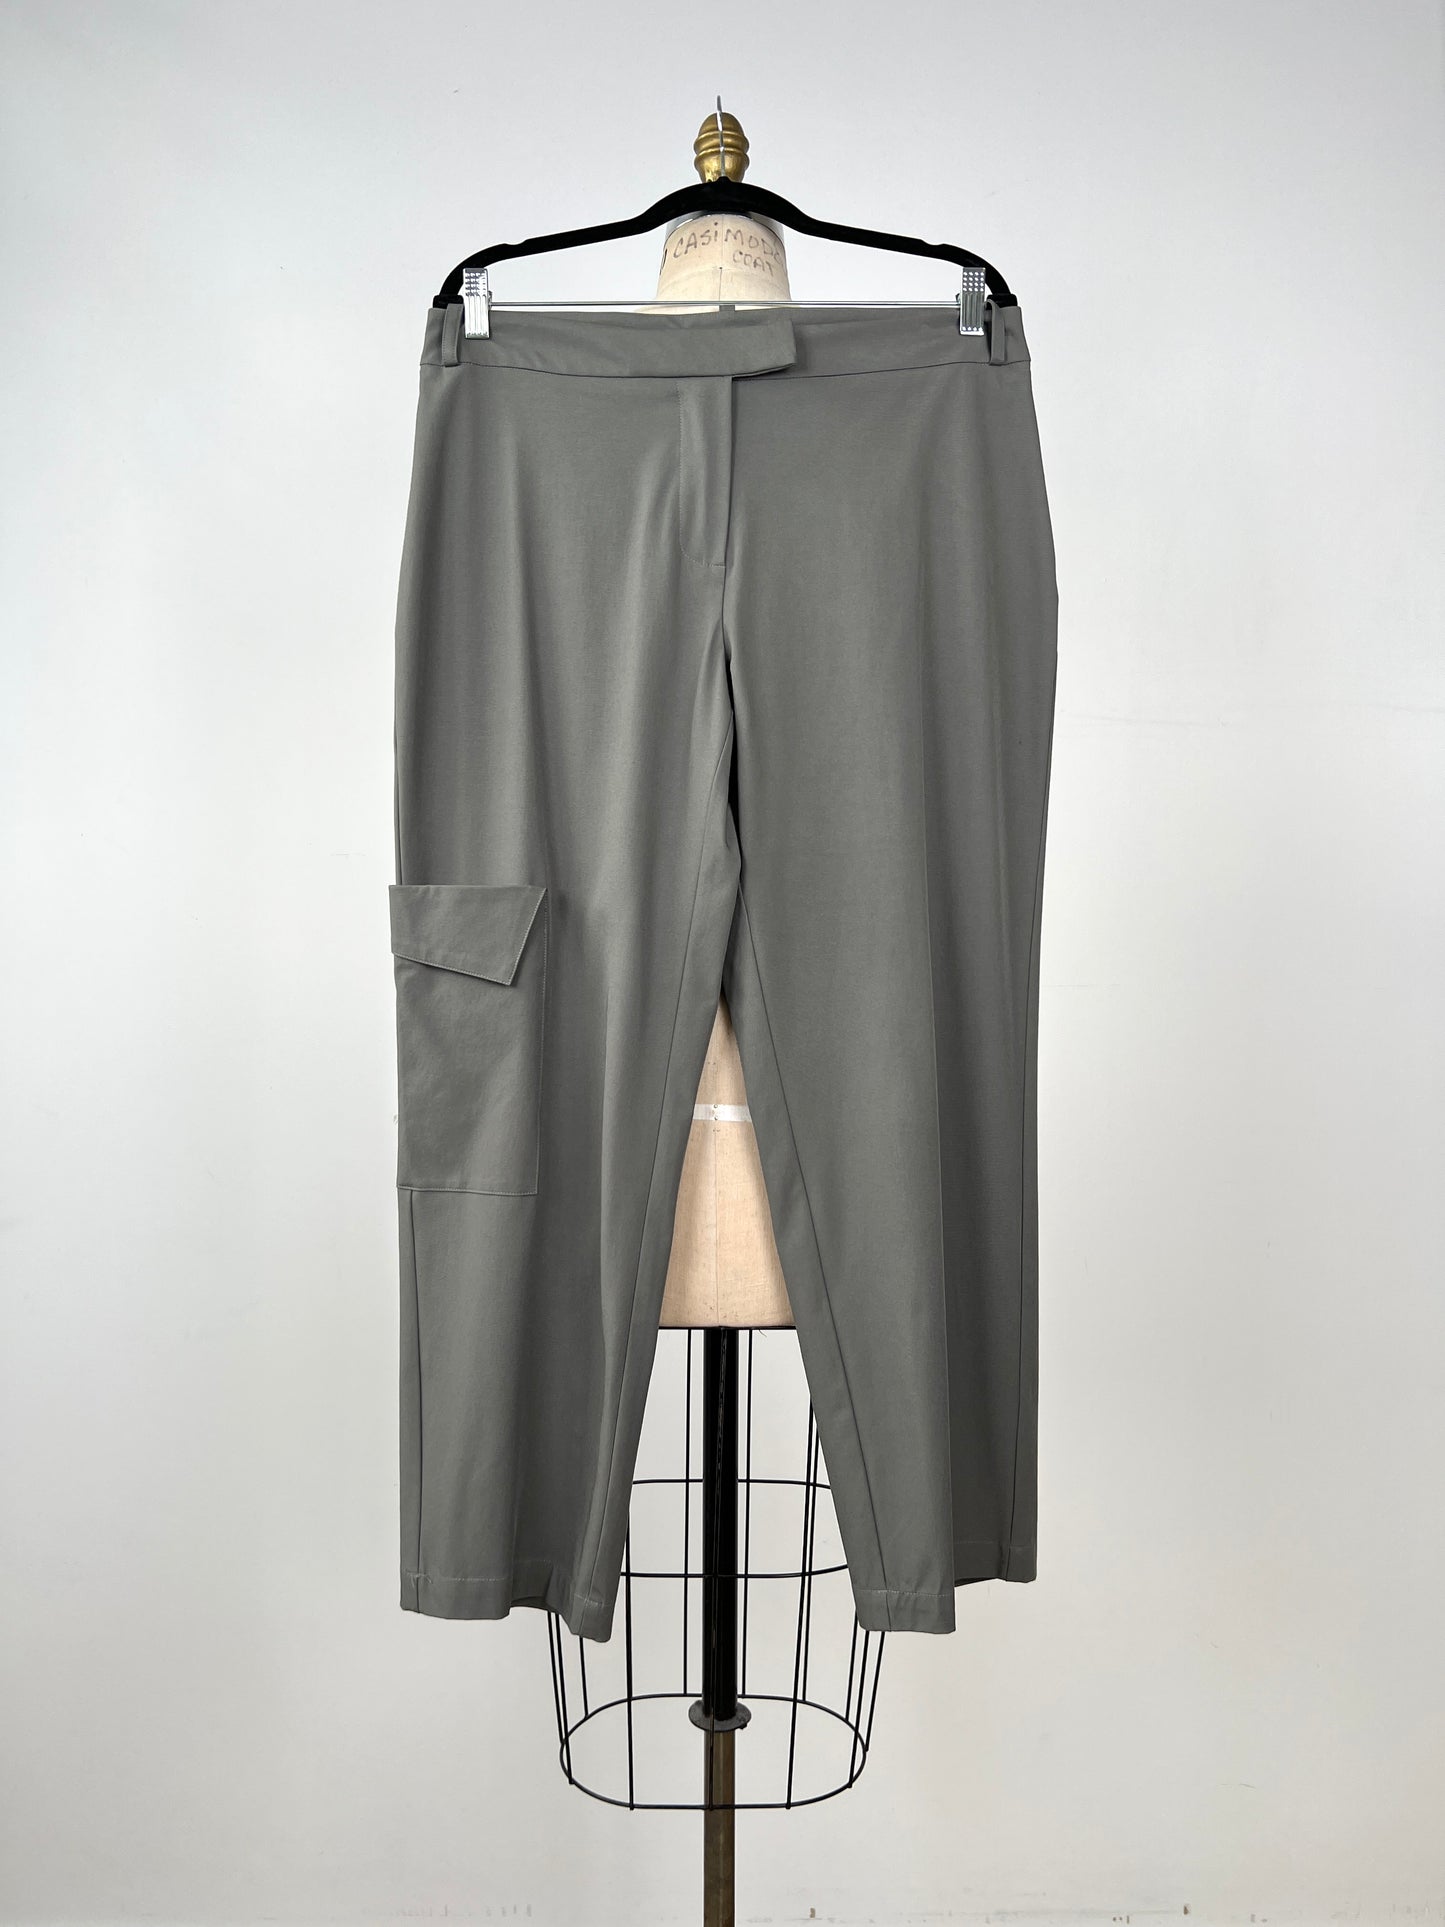 Pantalon gris ardoise à poche cargo (L)